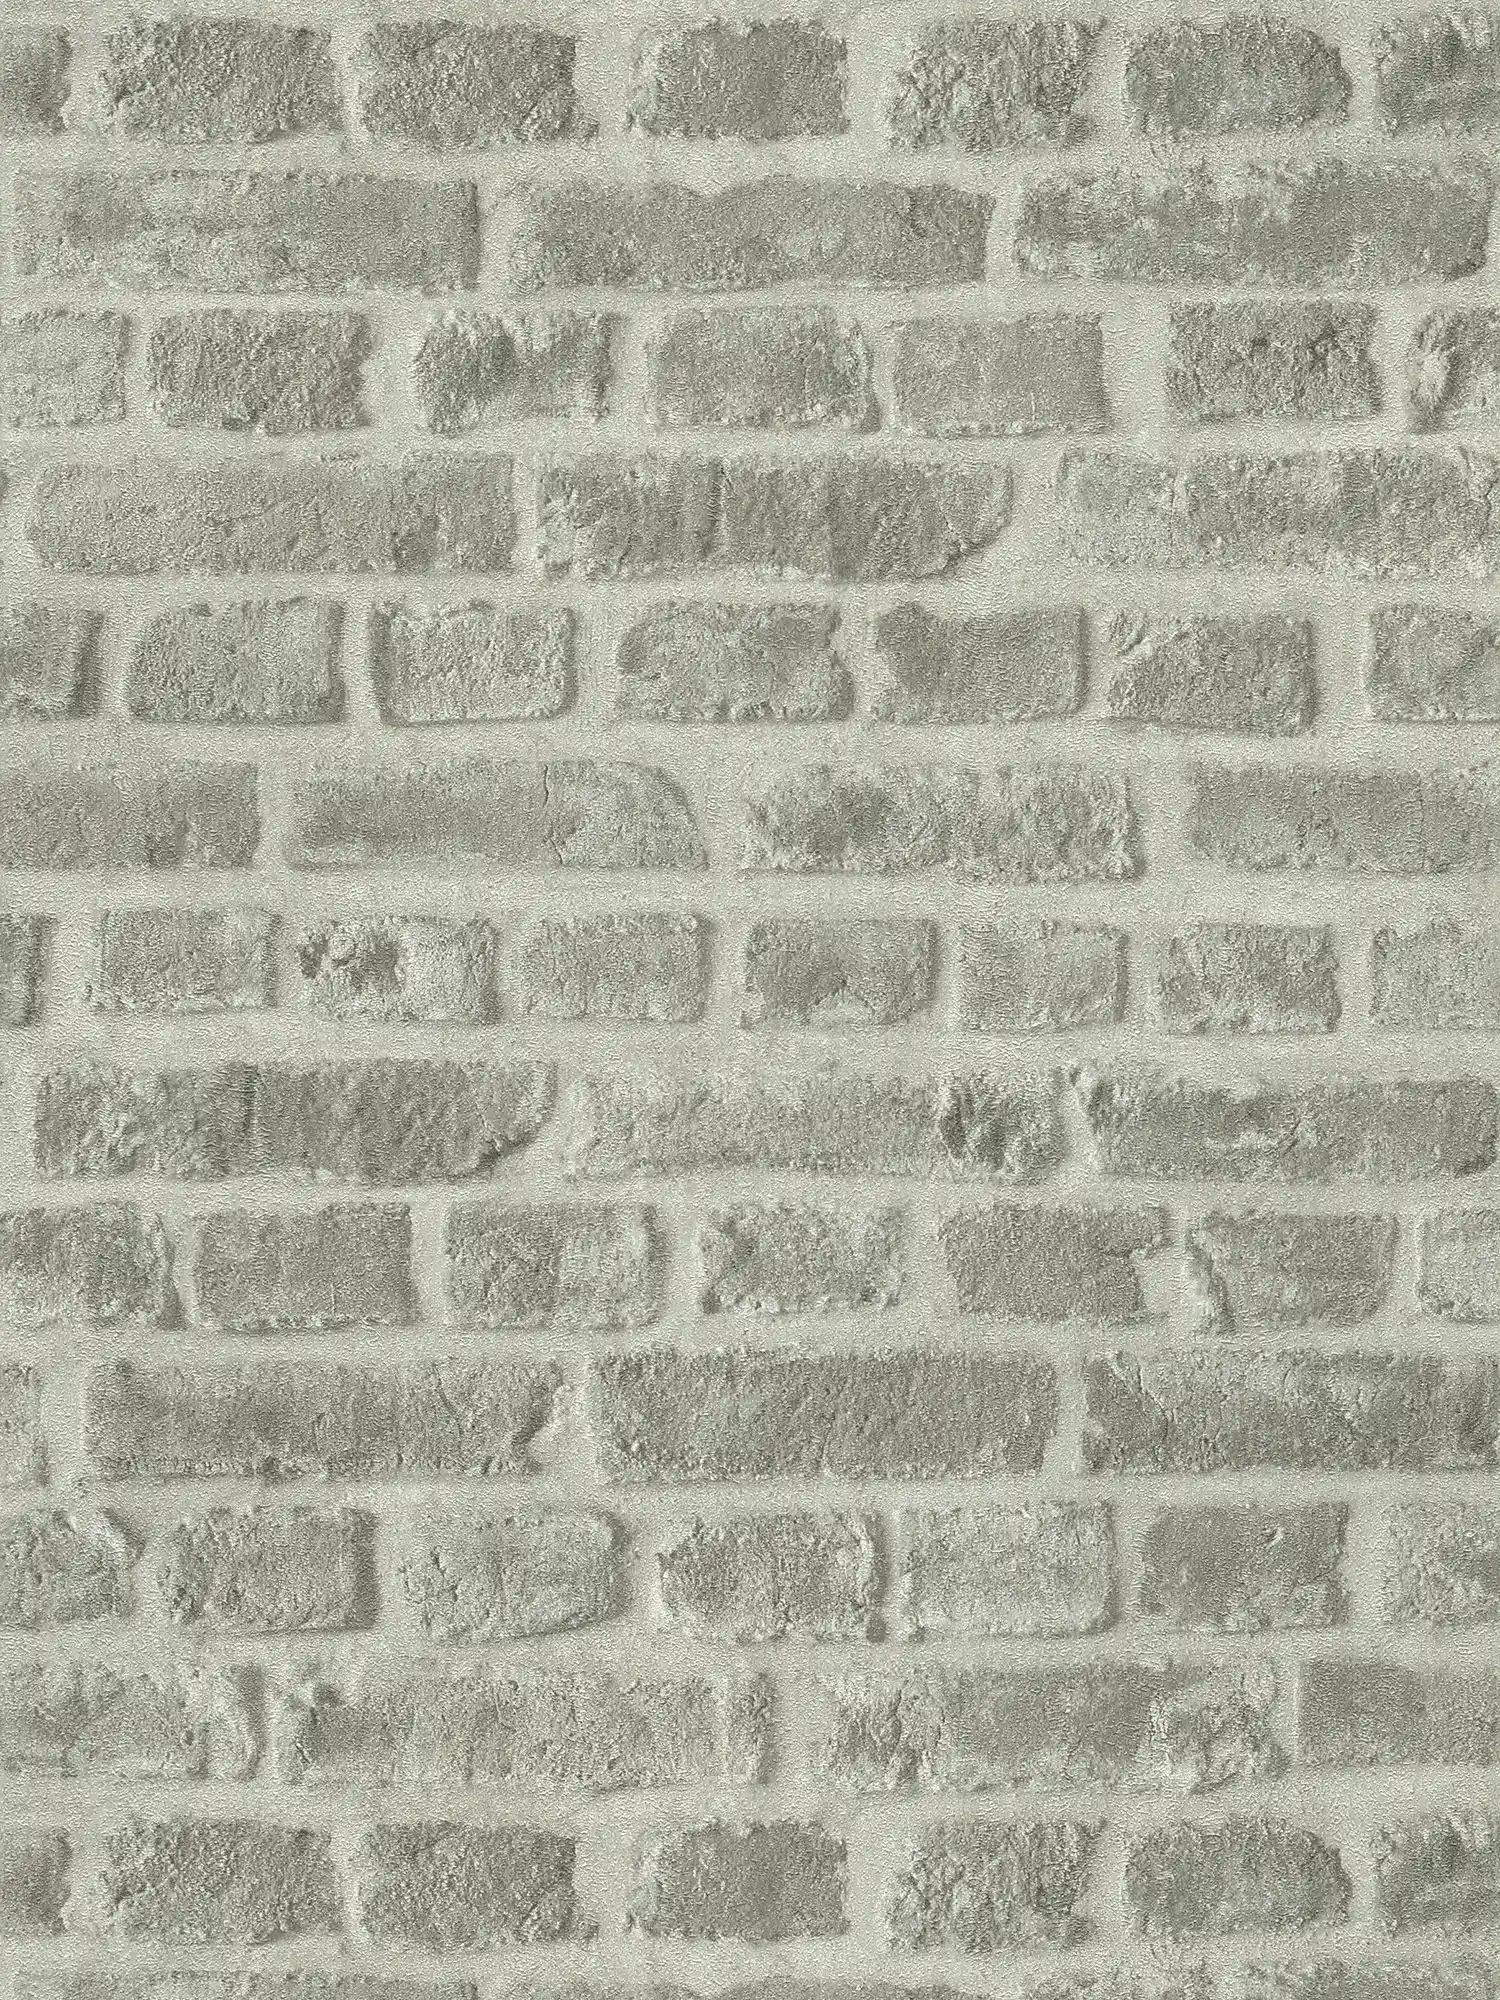 Donkergrijs steenlook behang baksteen metselwerk - grijs
